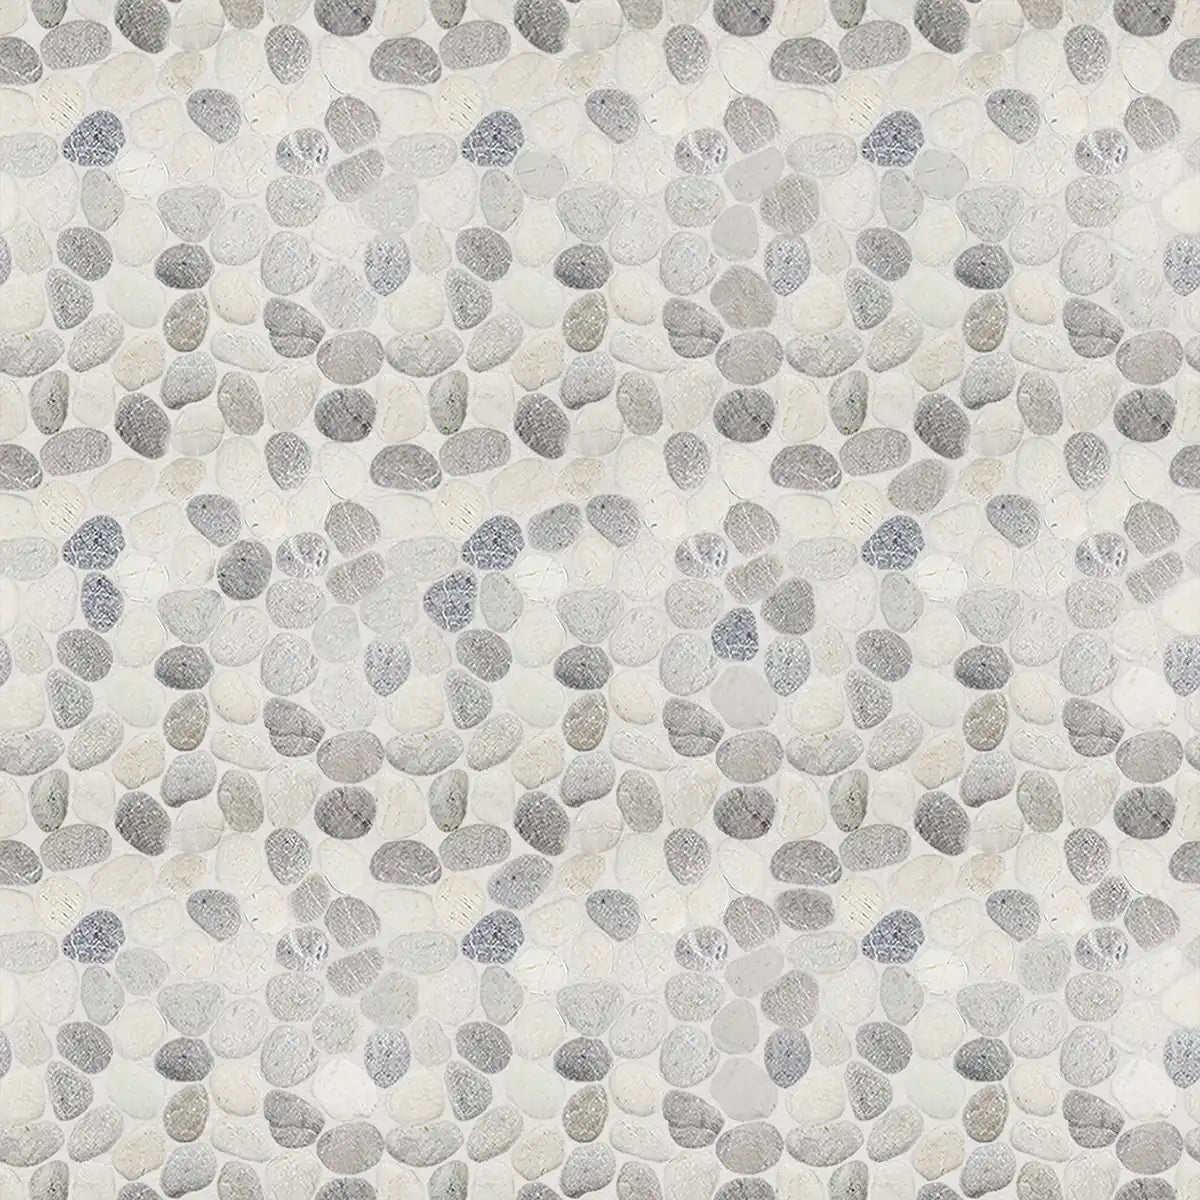 Pebble Stone Mosaic Tiles, Misty Pebble Mosaic Tile